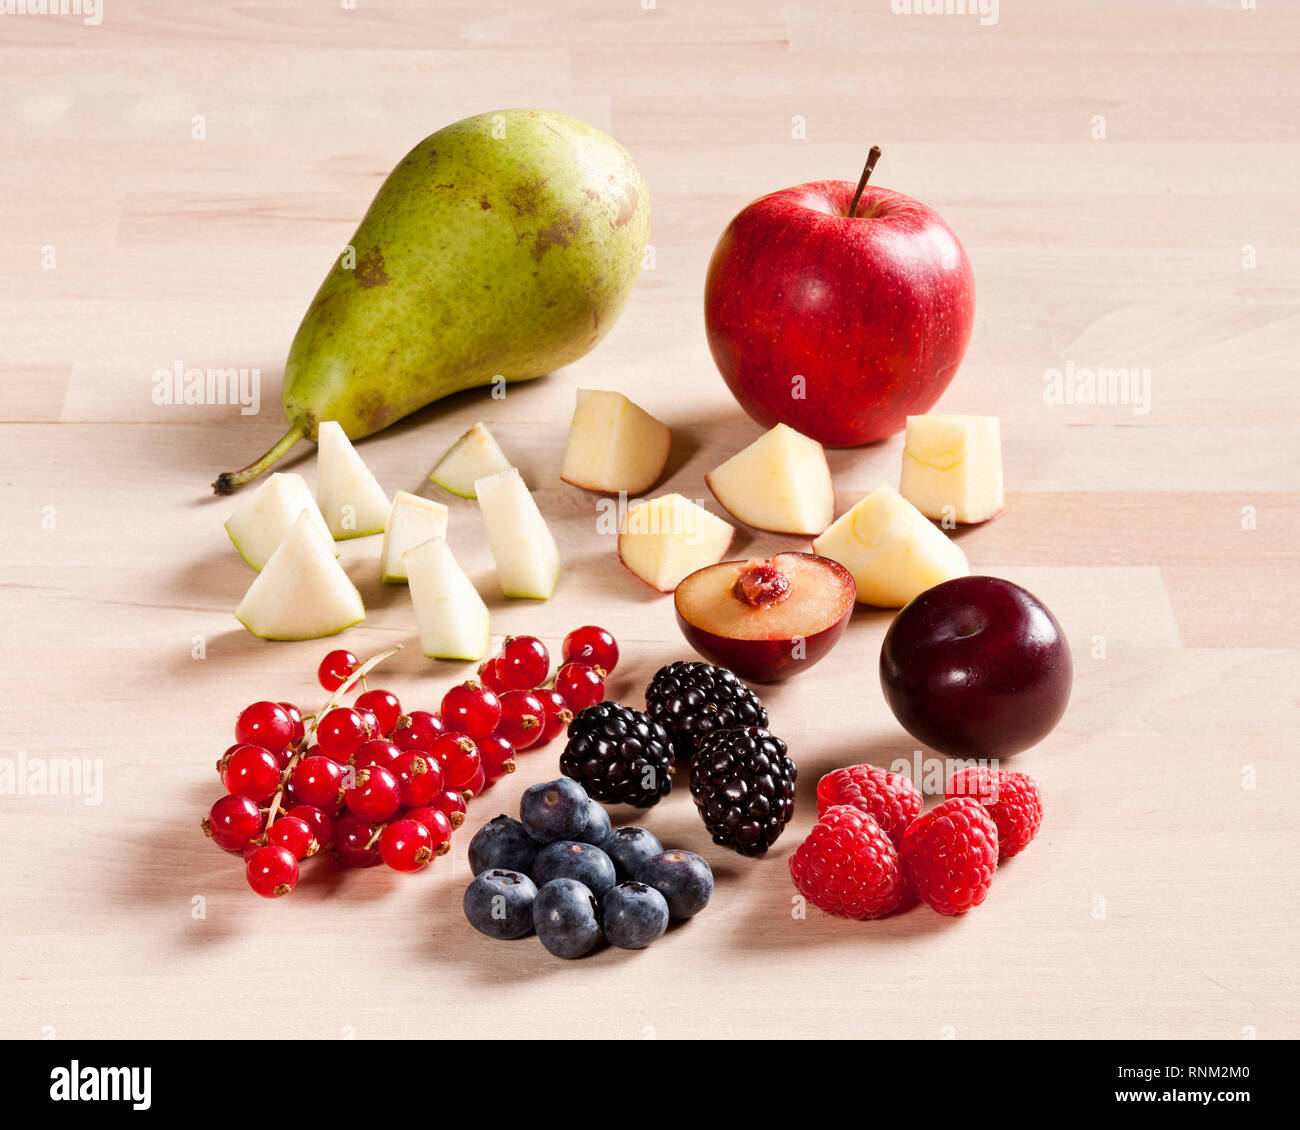 Différents fruits : fraises, framboises, mûres, myrtilles, pomme, prune et poire. Studio photo. Gremany. Banque D'Images